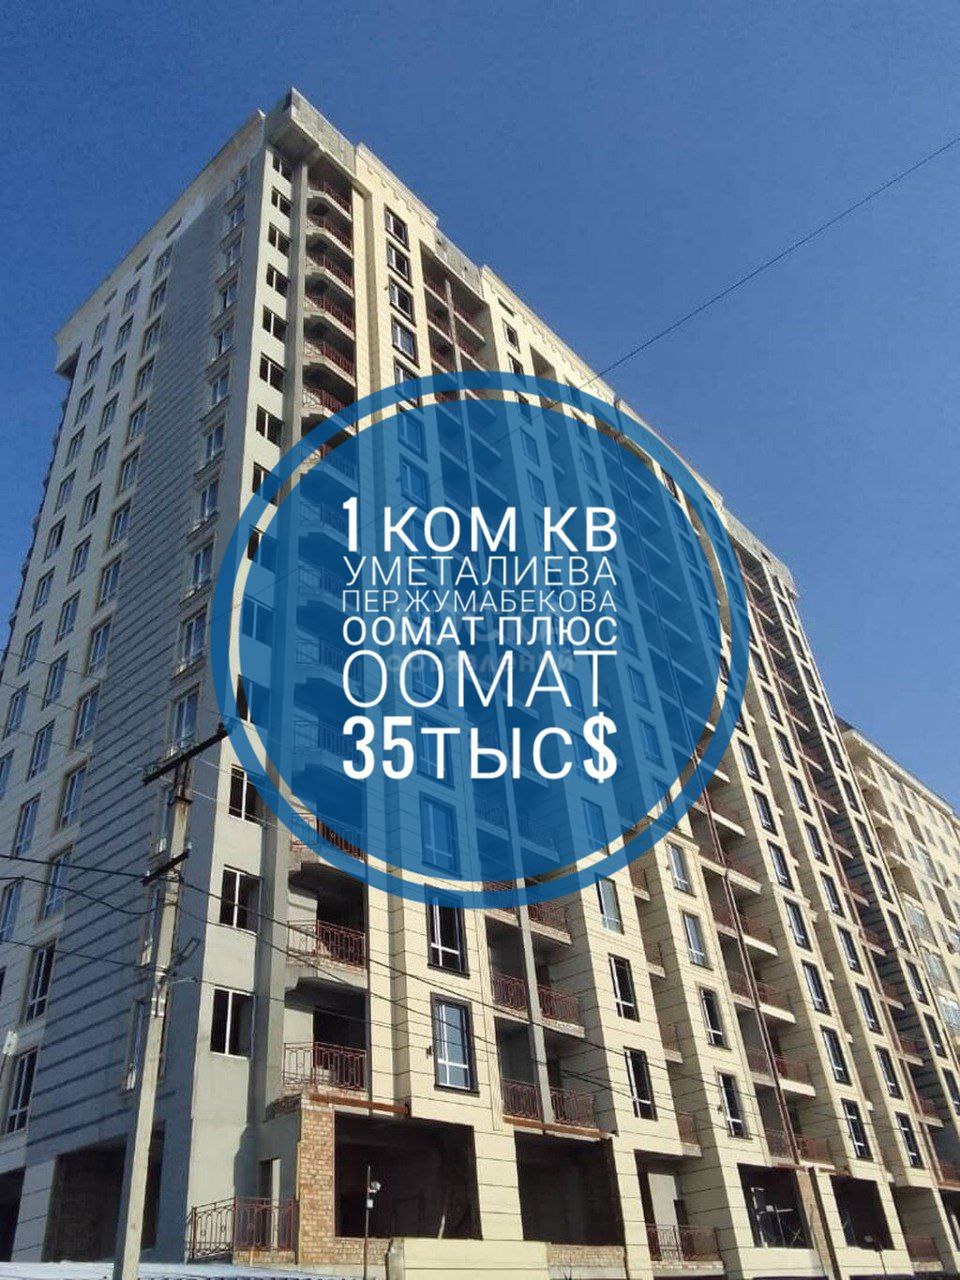 Продаю 1-комнатную квартиру, 41кв. м., этаж - 10/10, Уметалиева / Жумабекова .